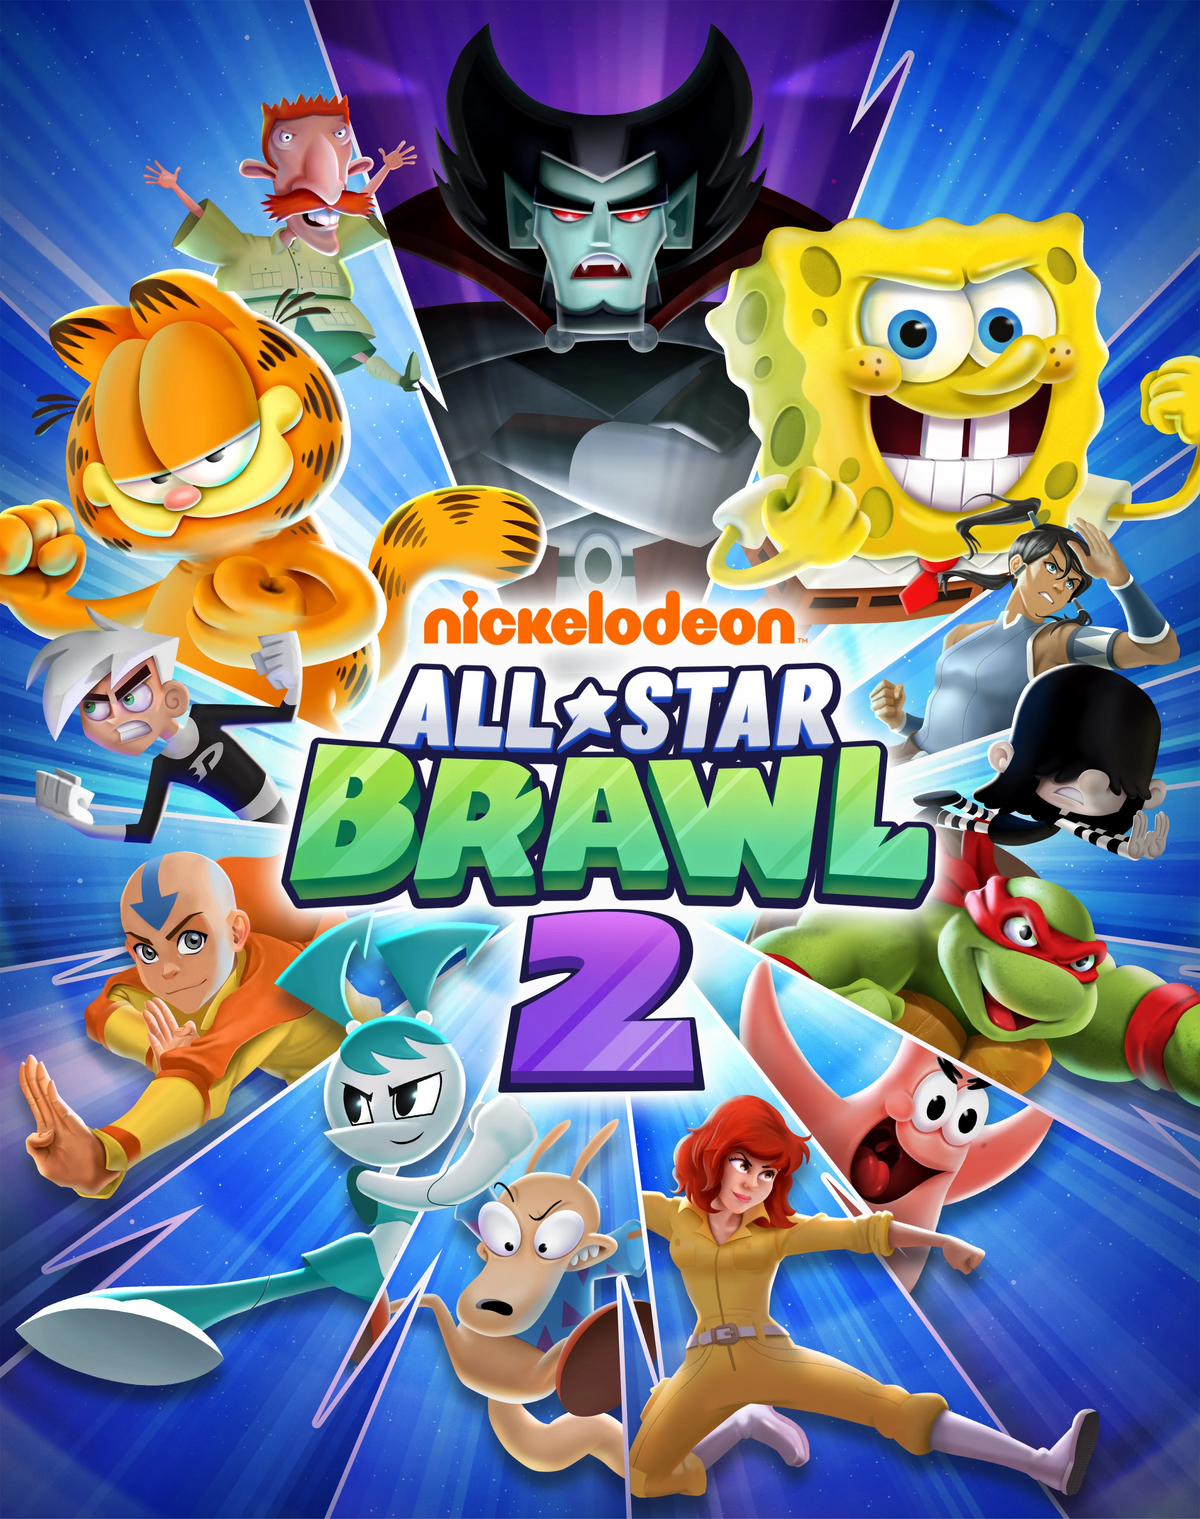 Nickelodeon All-Star Brawl/Zim - SuperCombo Wiki